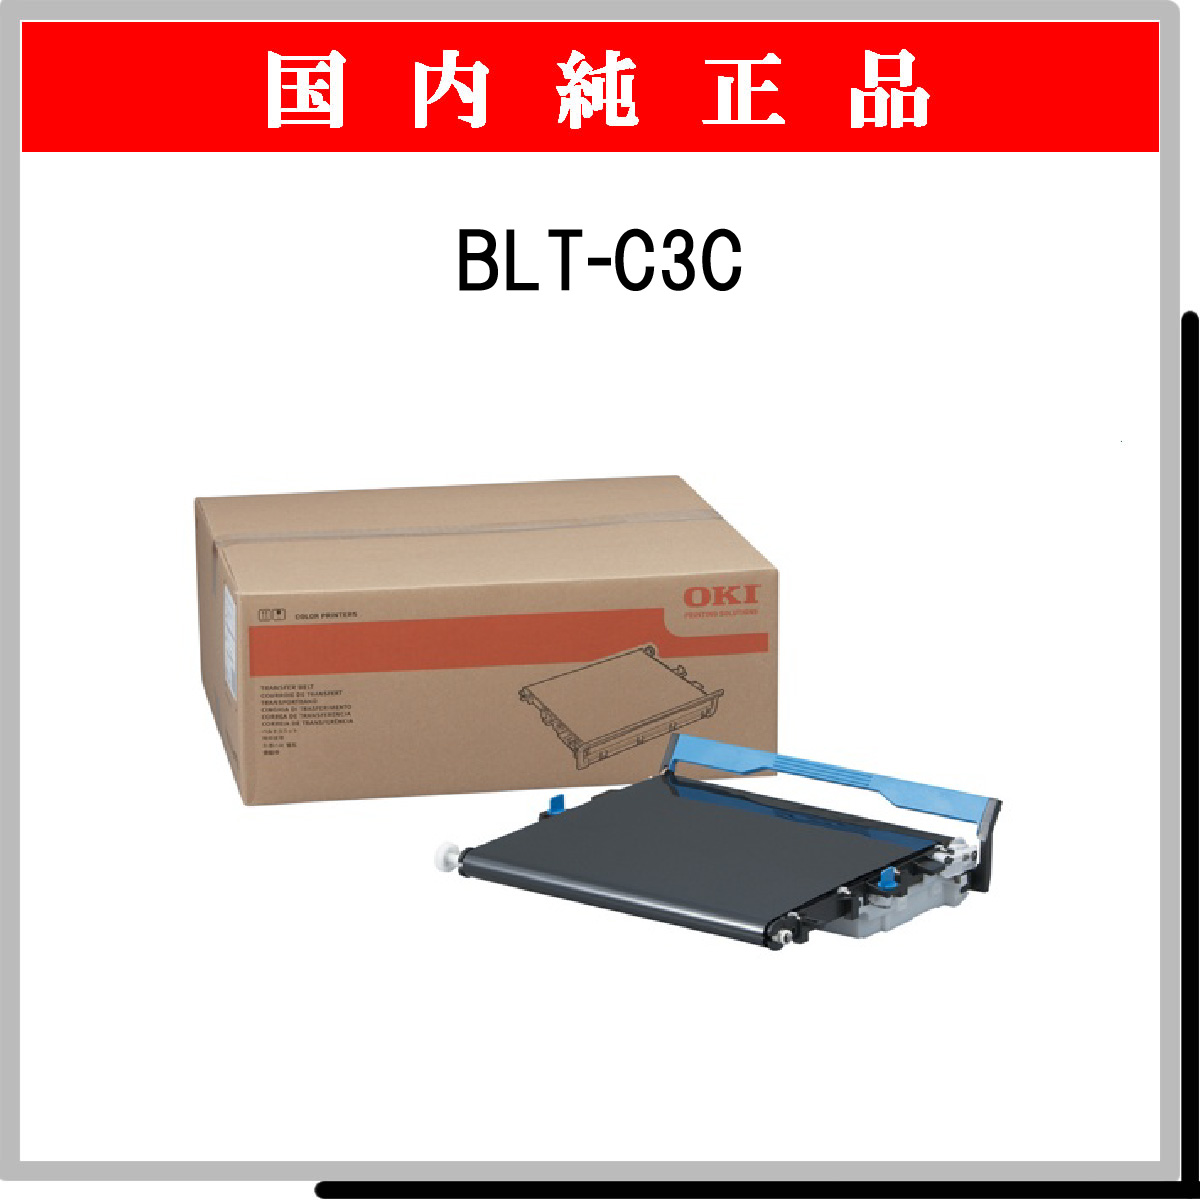 BLT-C3C ﾍﾞﾙﾄﾕﾆｯﾄ 純正